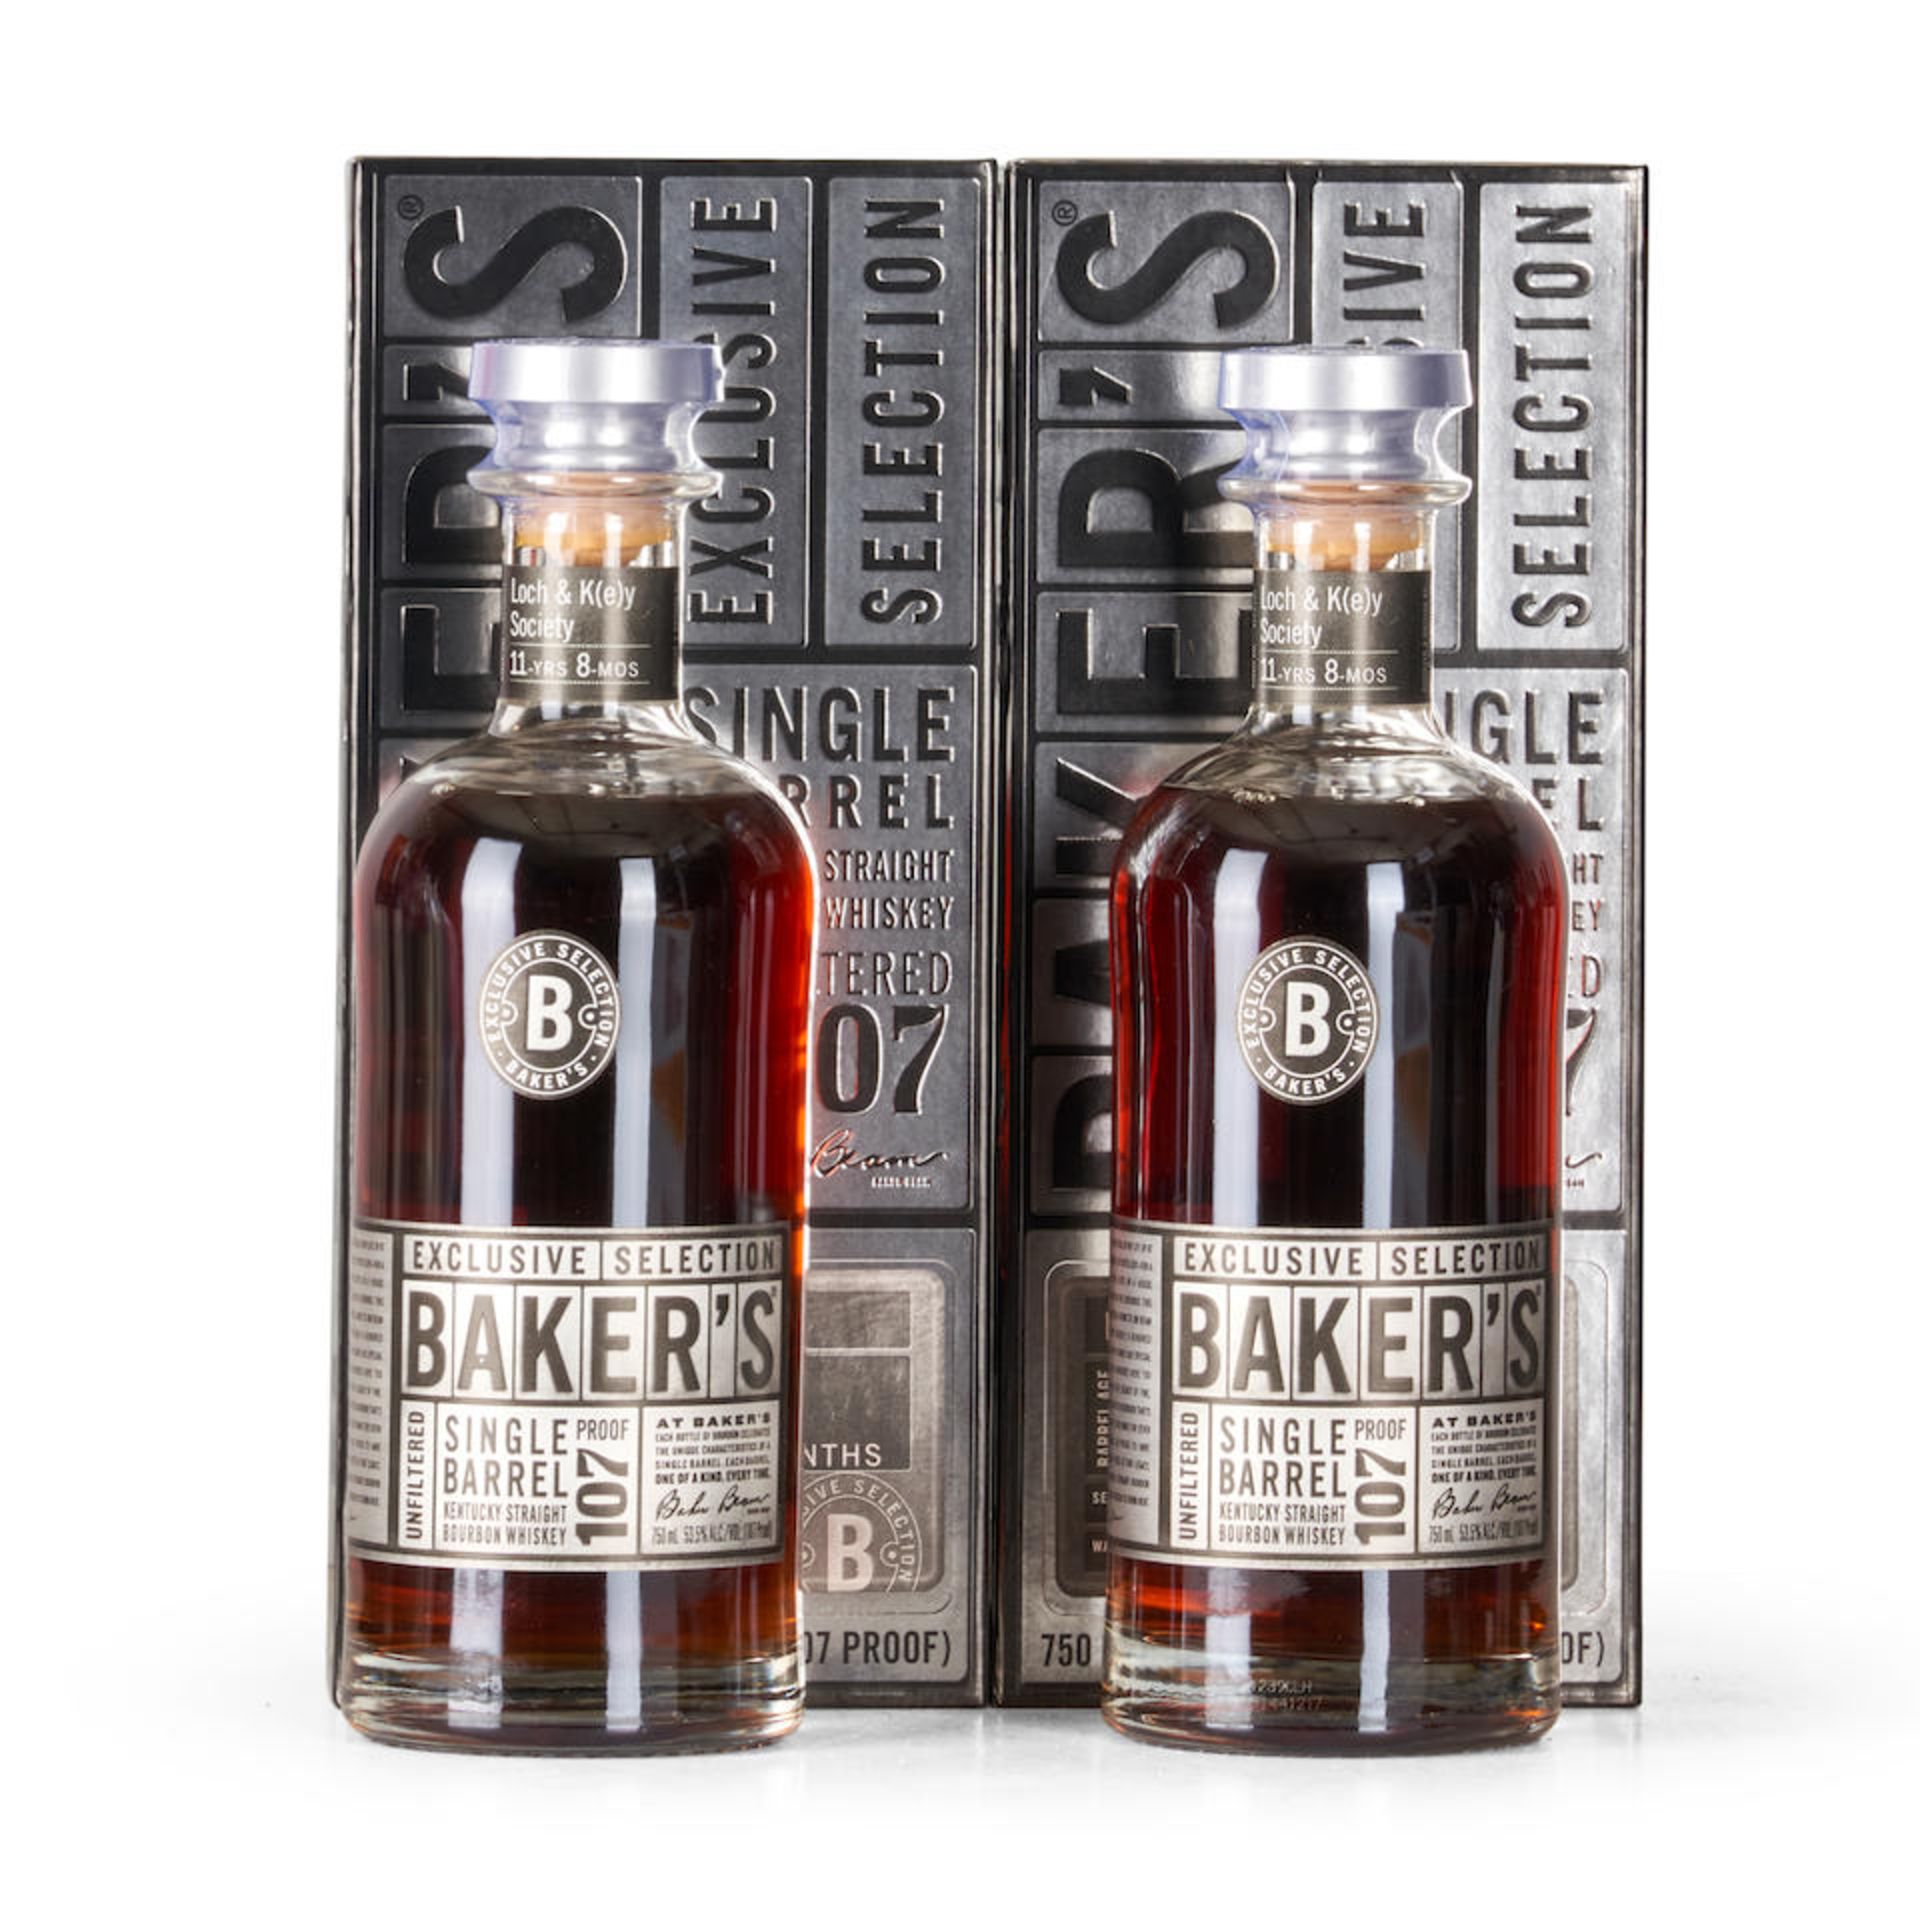 Baker's Single Barrel Bourbon 11 Years Old (2 750ml bottles)